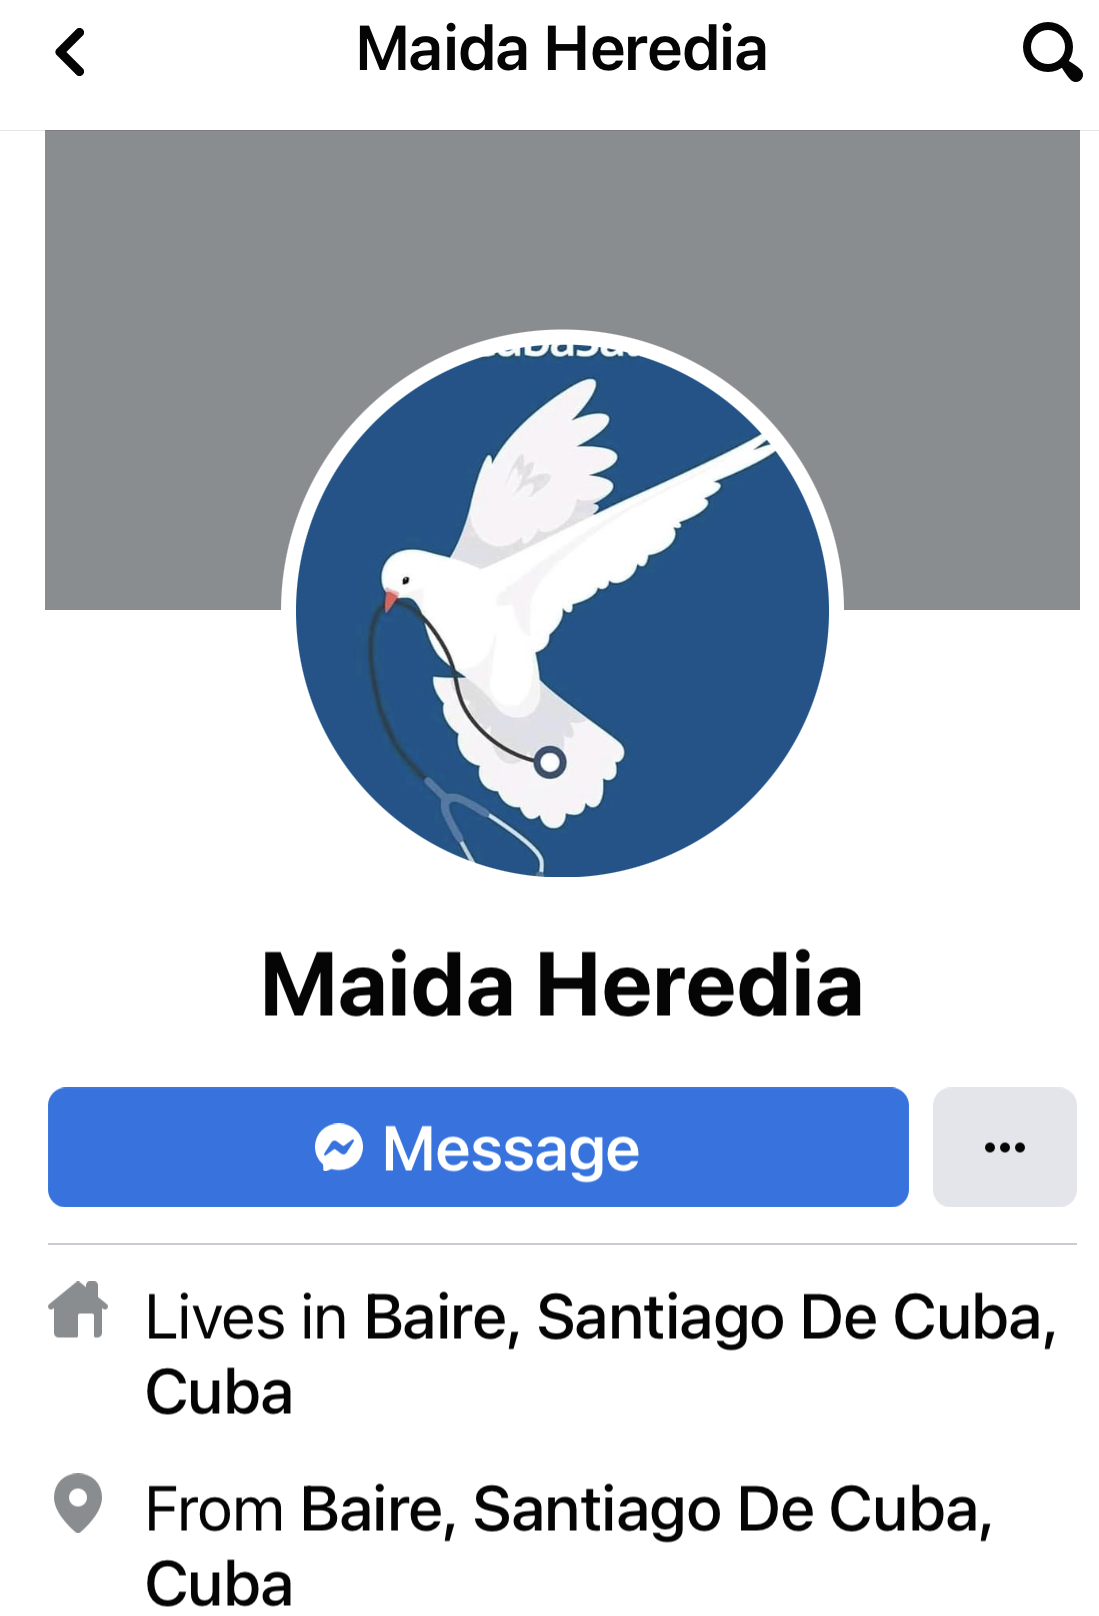 Maida Heredia